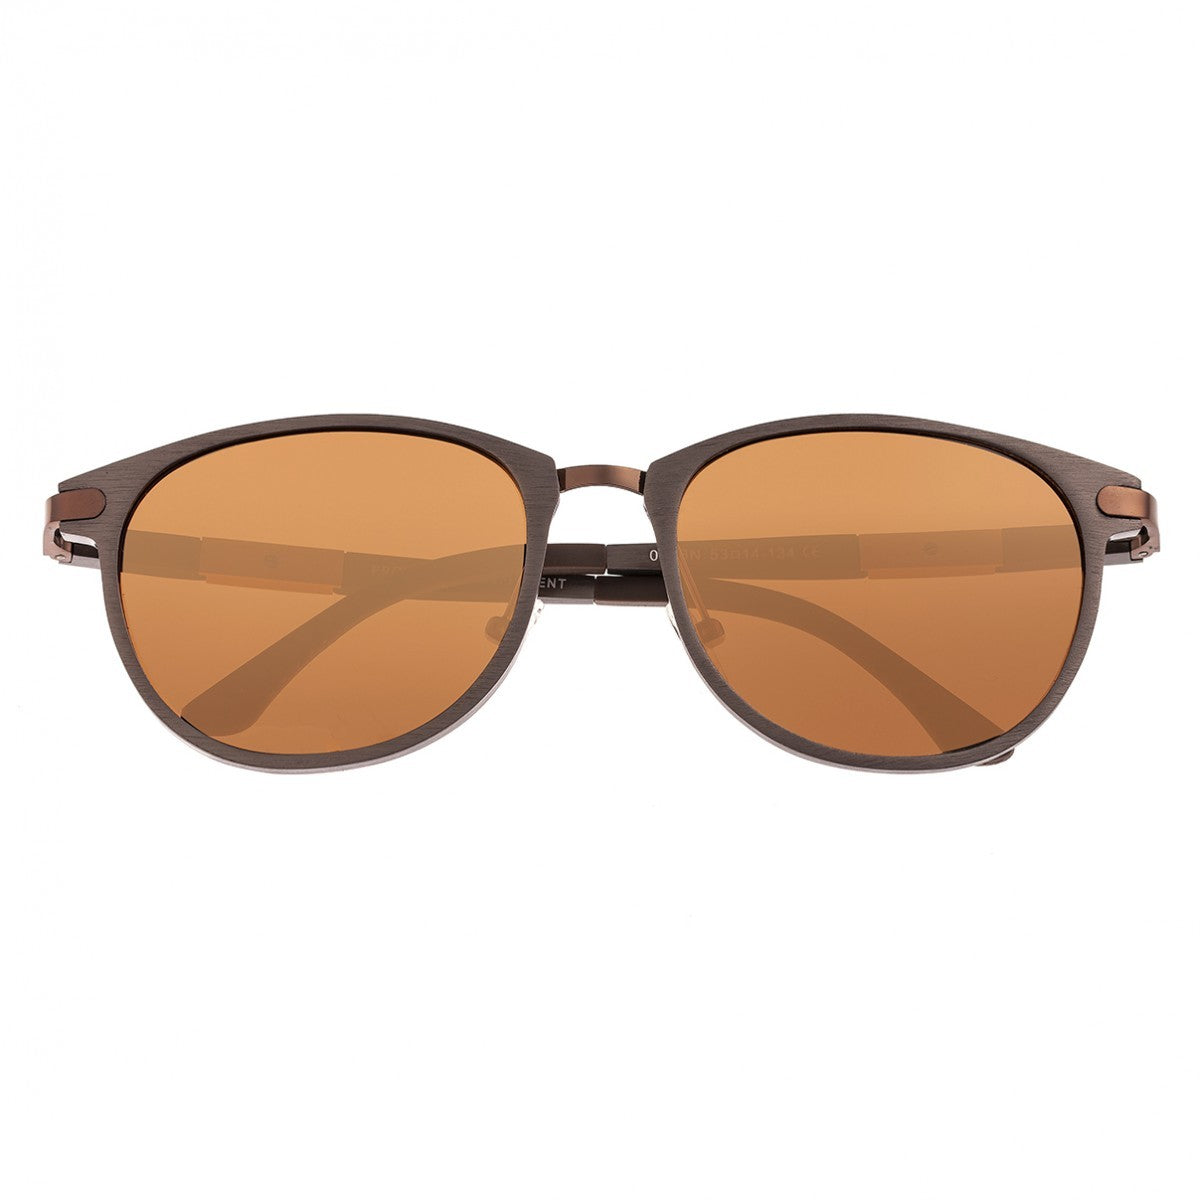 Breed Orion Aluminium Polarized Sunglasses - Brown/Brown - BSG020BN